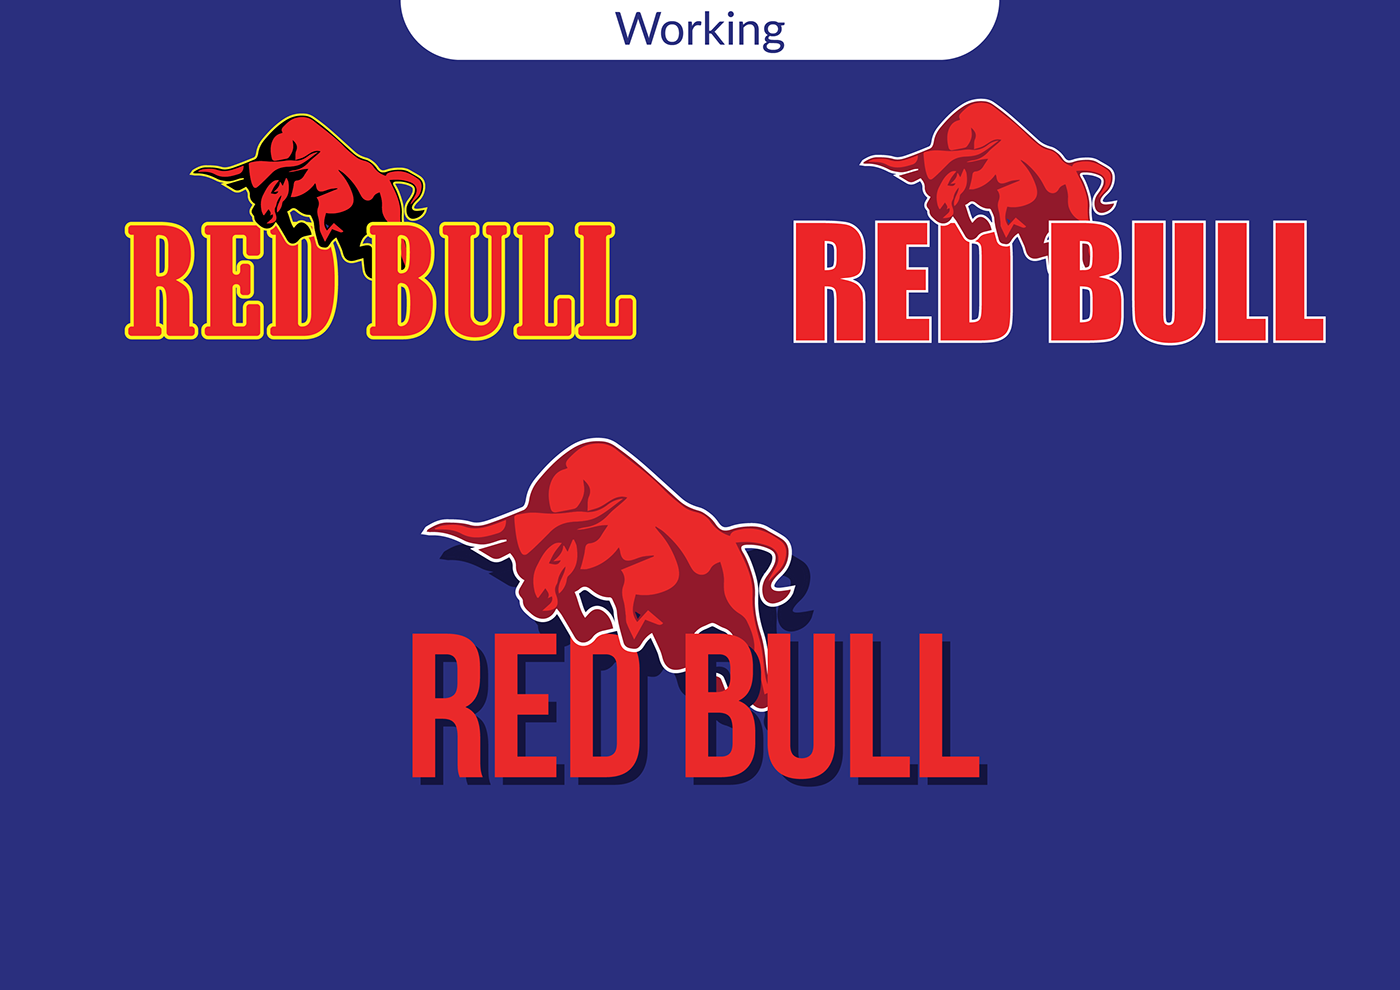 branding  logo Logo Design rebranding Red Bull Red bull rebranding redbull branding Redbull logo